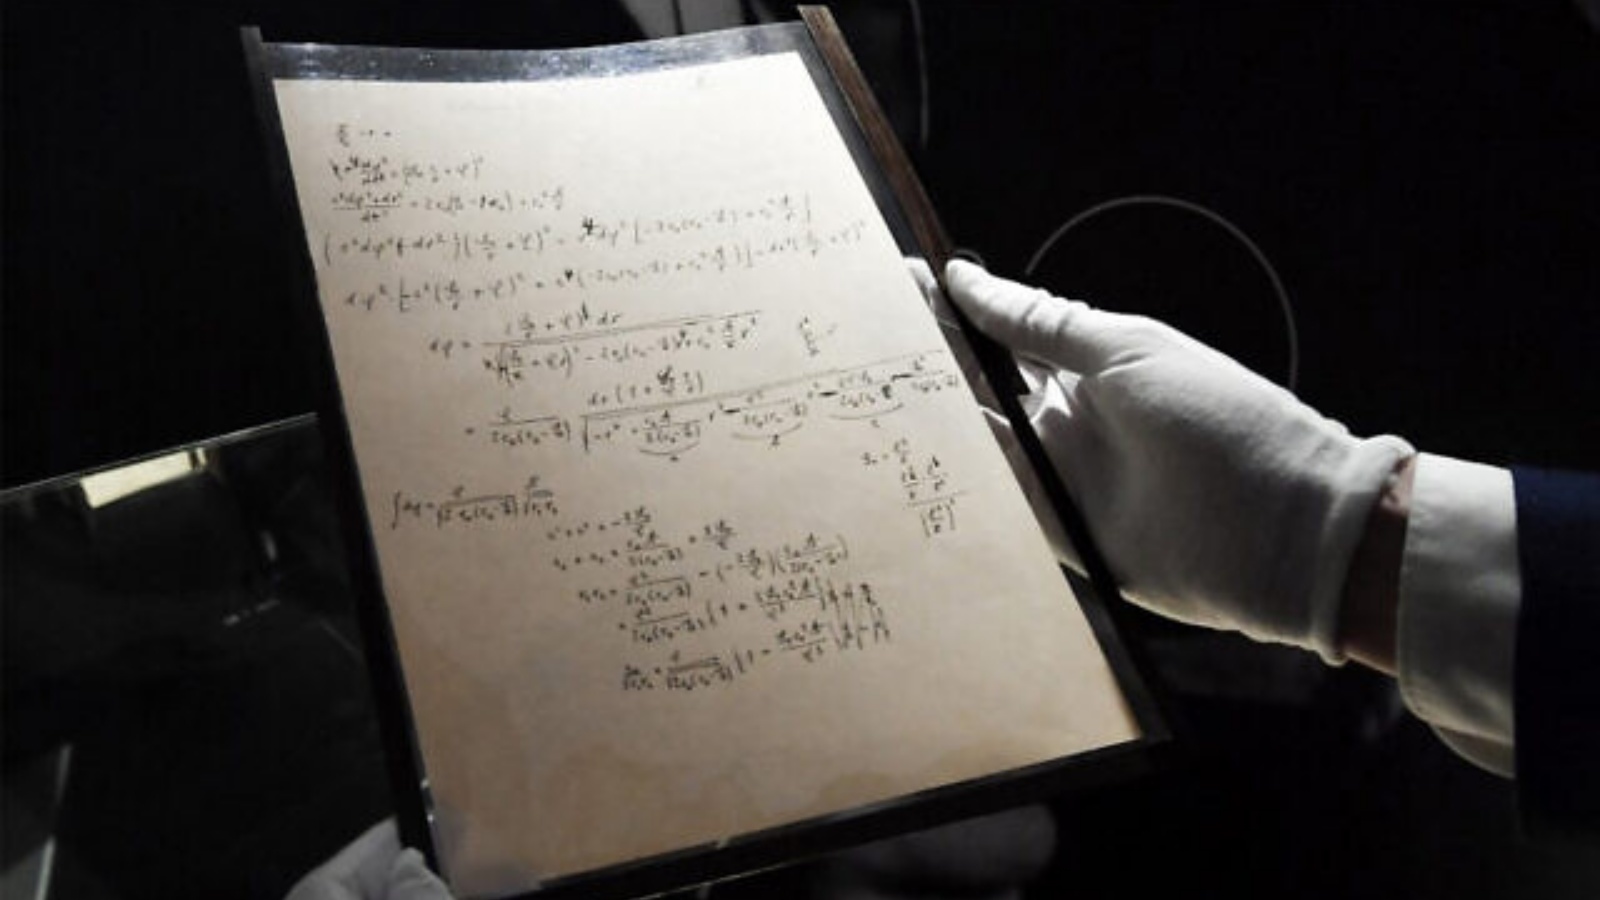 صفحات من إحدى المخطوطات التحضيرية لنظرية النسبية العامة لألبرت أينشتاين، أثناء عرضها قبل يوم واحد من طرحها في مزاد علني في دار كريستيز للمزادات في باريس، في 22 تشرين الثاني/نوفمبر 2021.